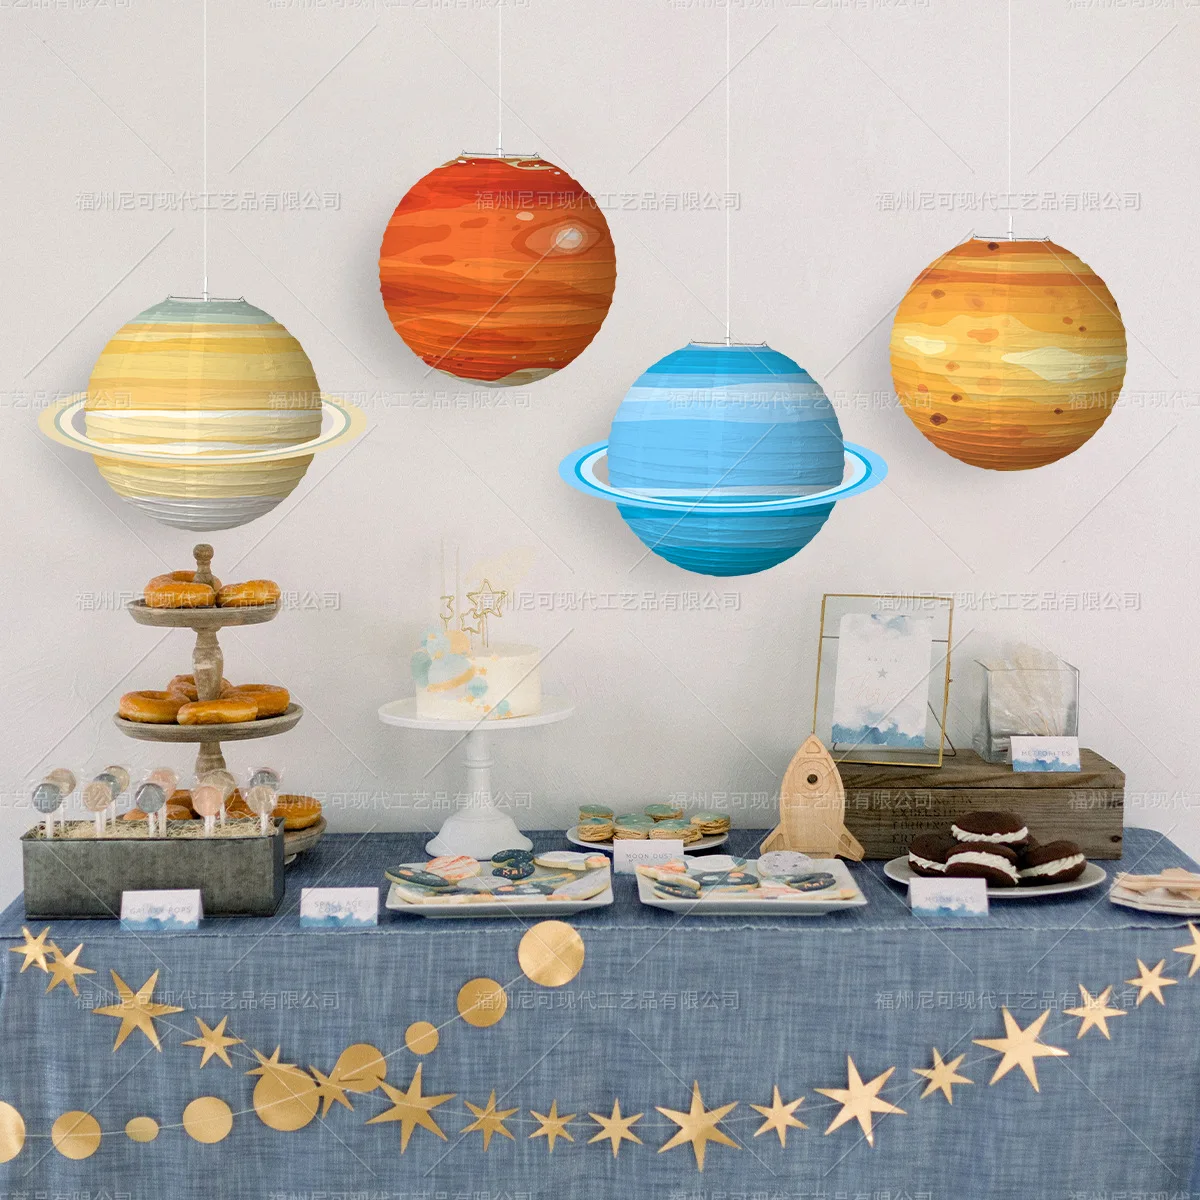 

Восемь планет, бумажные фонари, планета украшение для торта на день рождения на тему "Лошадки карусели", декор для детской вечеринки, космос, ...